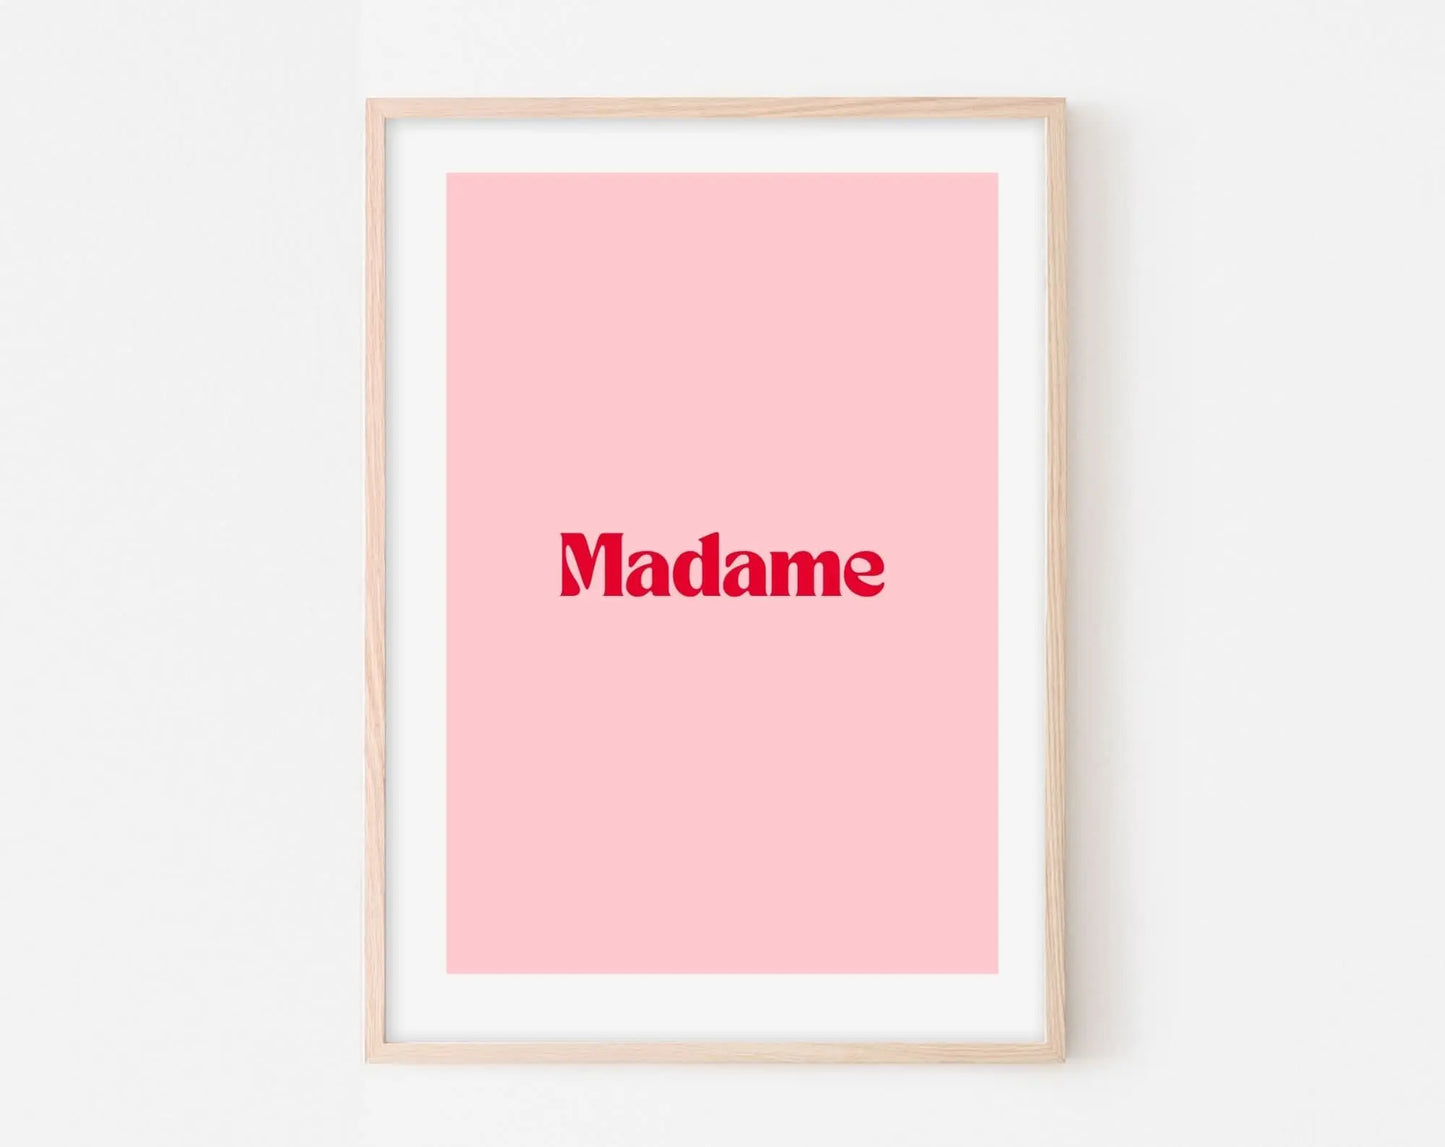 Affiche Madame - Affiche citation rose - Pink affiche  - Poster à imprimer FLTMfrance